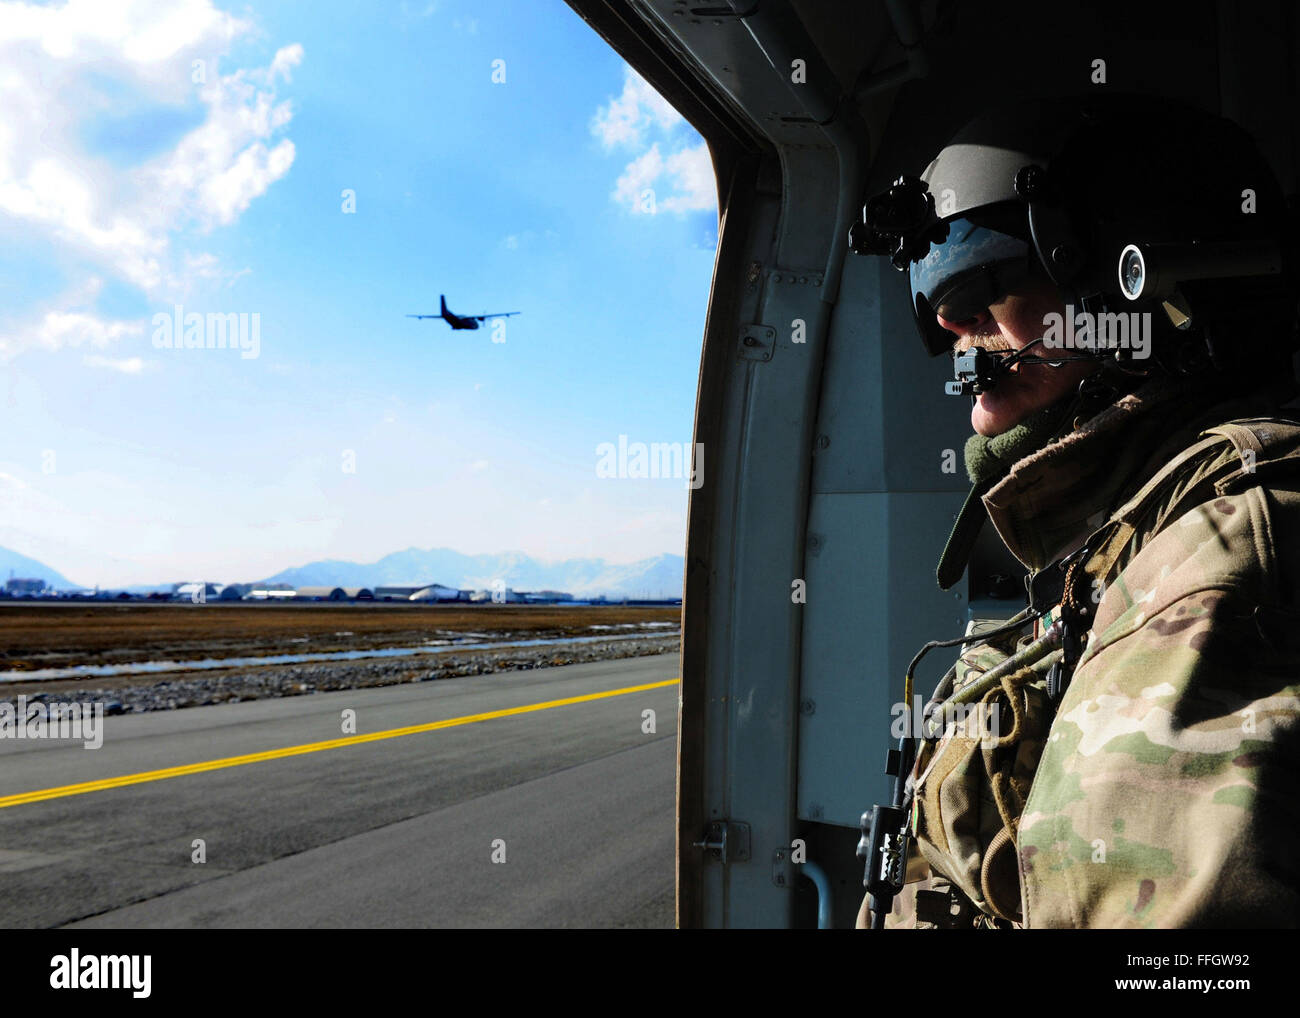 Senior Master Sgt. Todd Peplow, eine Antenne Schütze mit der 438th Air Expeditionary Advisory Squadron, mit Blick auf den internationalen Flughafen von Kabul Flightline nach Abschluss einen Flug zwischen Jalalabad und Kabul, Afghanistan. Peplow ist derzeit eingesetzt, um die afghanischen Luftwaffe Flugingenieure beratenden auszubilden. Stockfoto